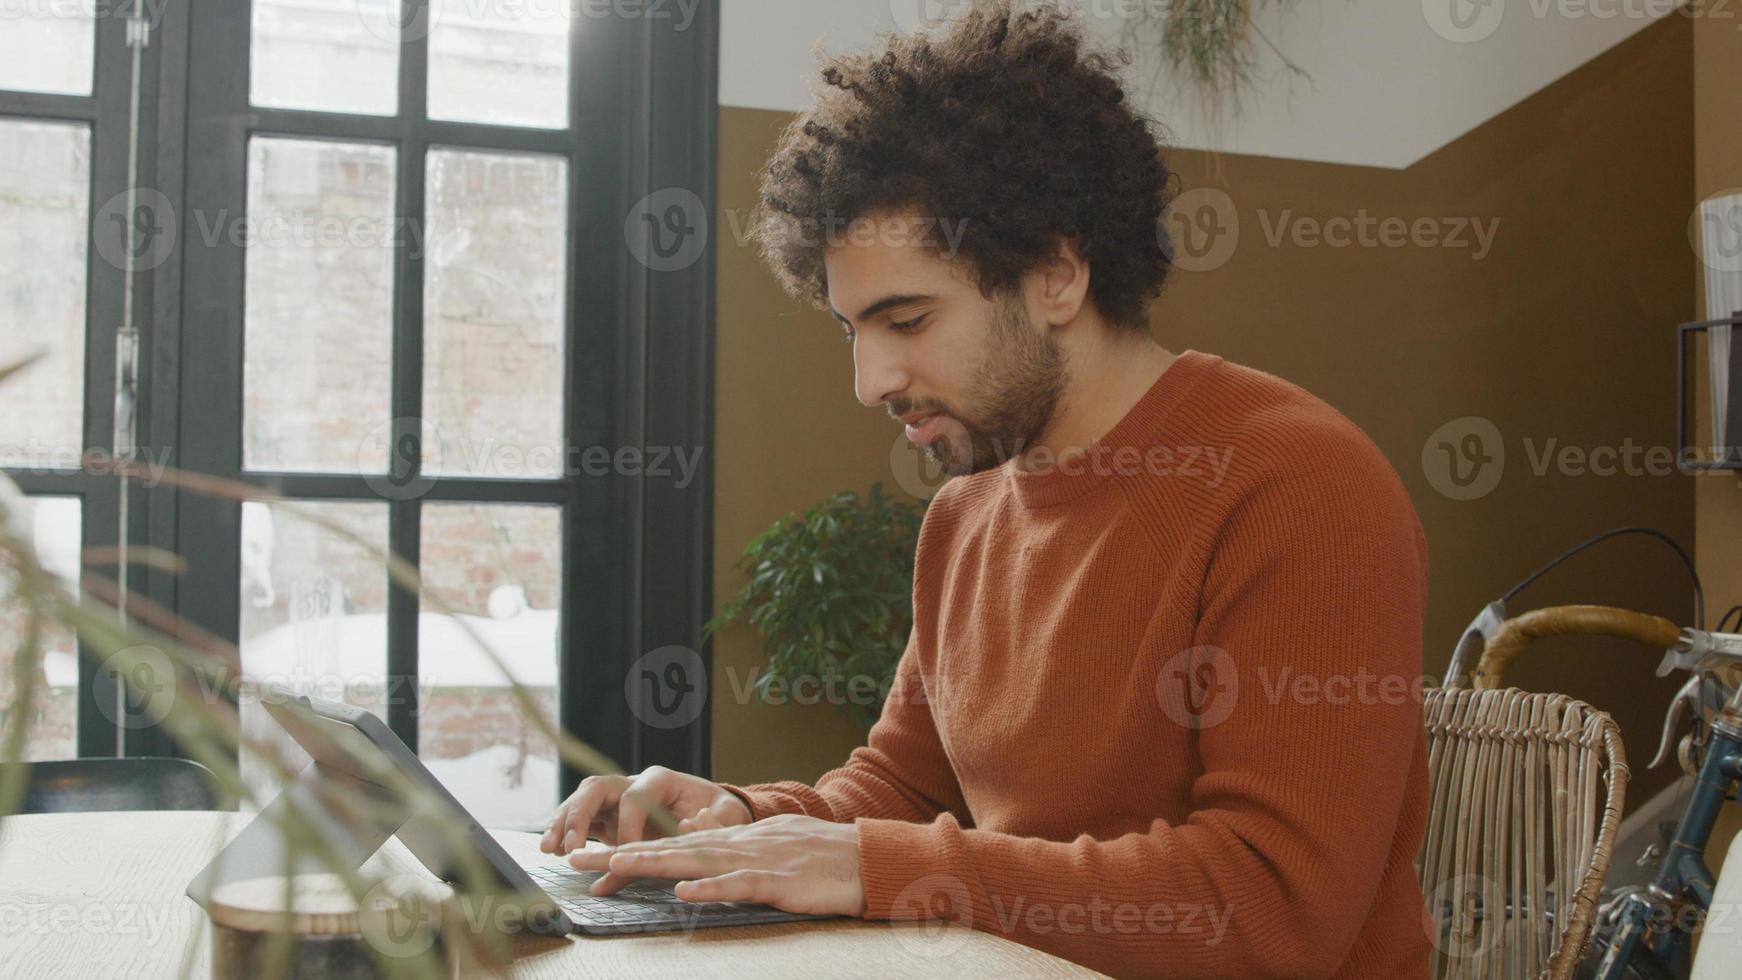 giovane uomo mediorientale si siede al tavolo, digitando sul portatile, sorridendo e parlando foto